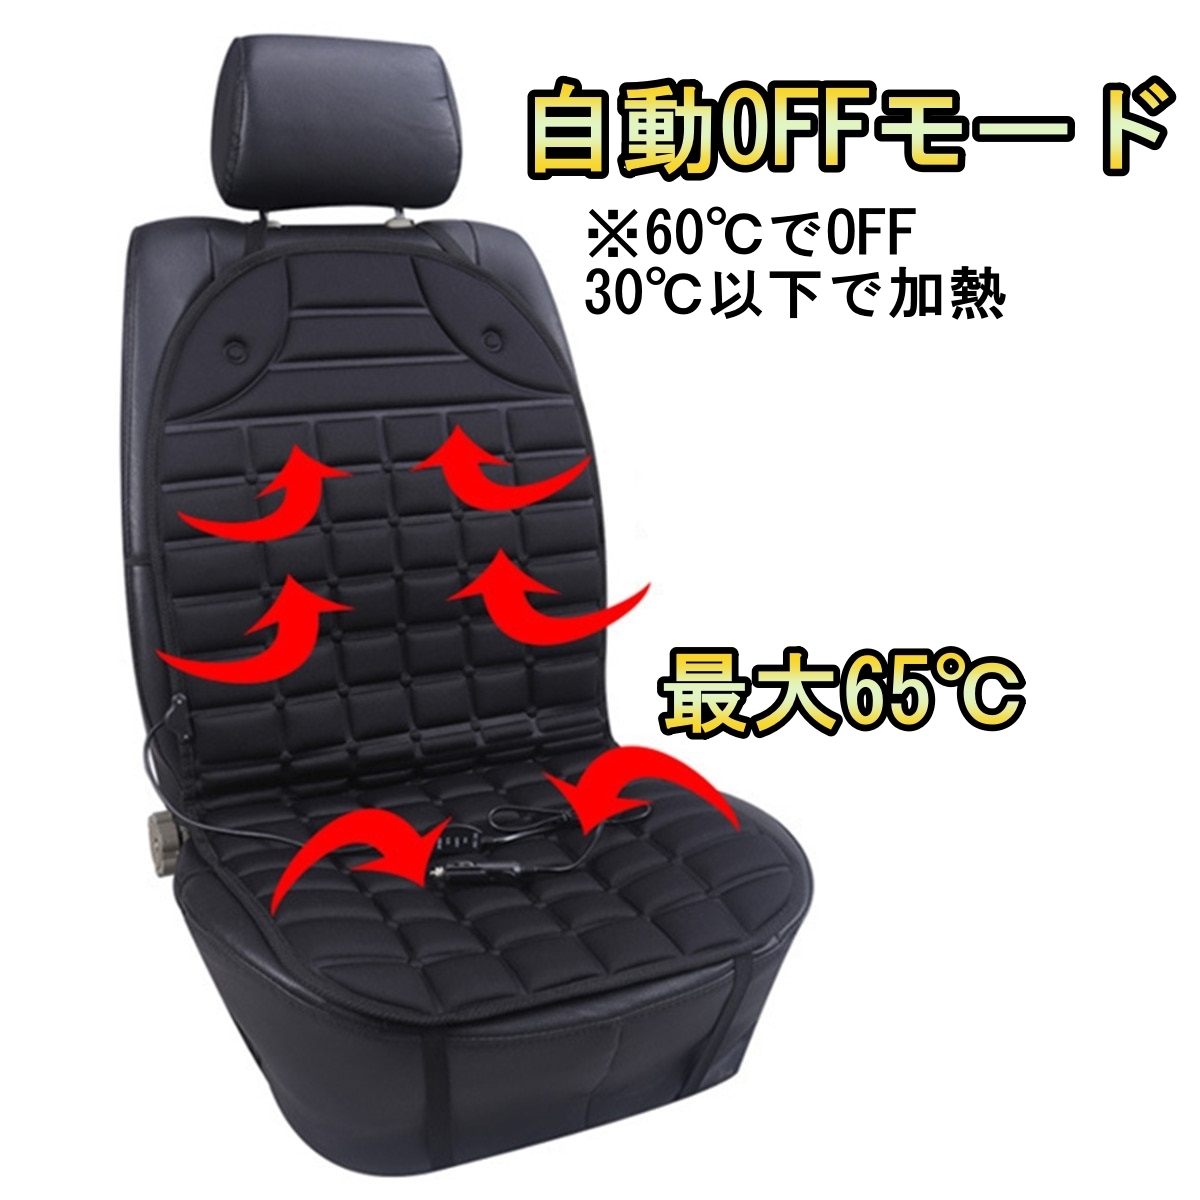  обогрев сидений машина hot чехол для сиденья Copen L880K температура регулировка возможность 1 сиденье комплект Daihatsu можно выбрать 2 цвет 